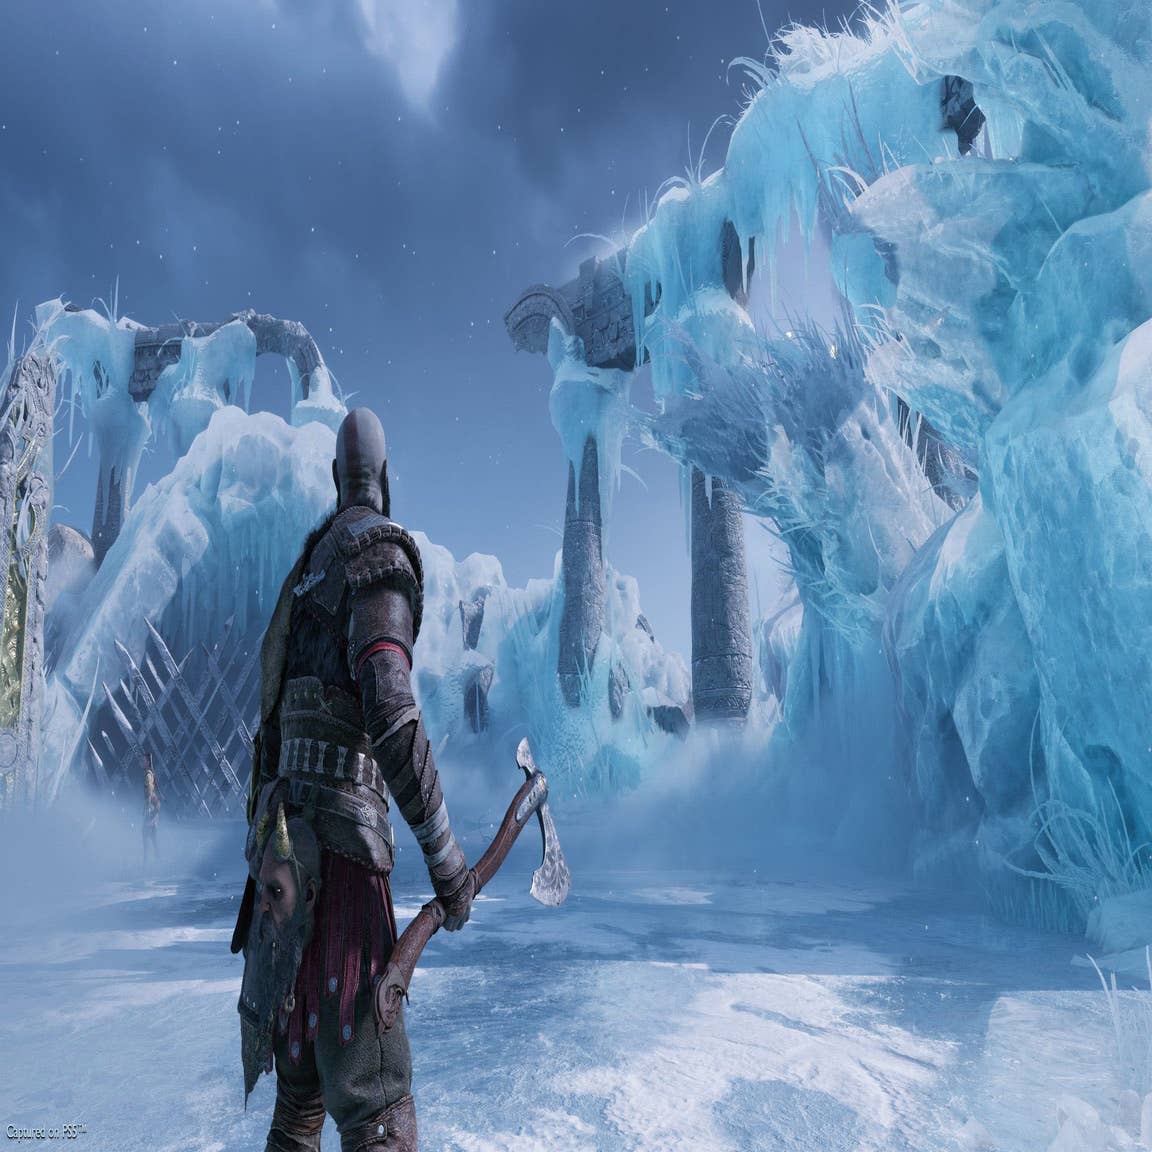 Cuidado, spoilers de God of War: Ragnarok já estão circulando pela